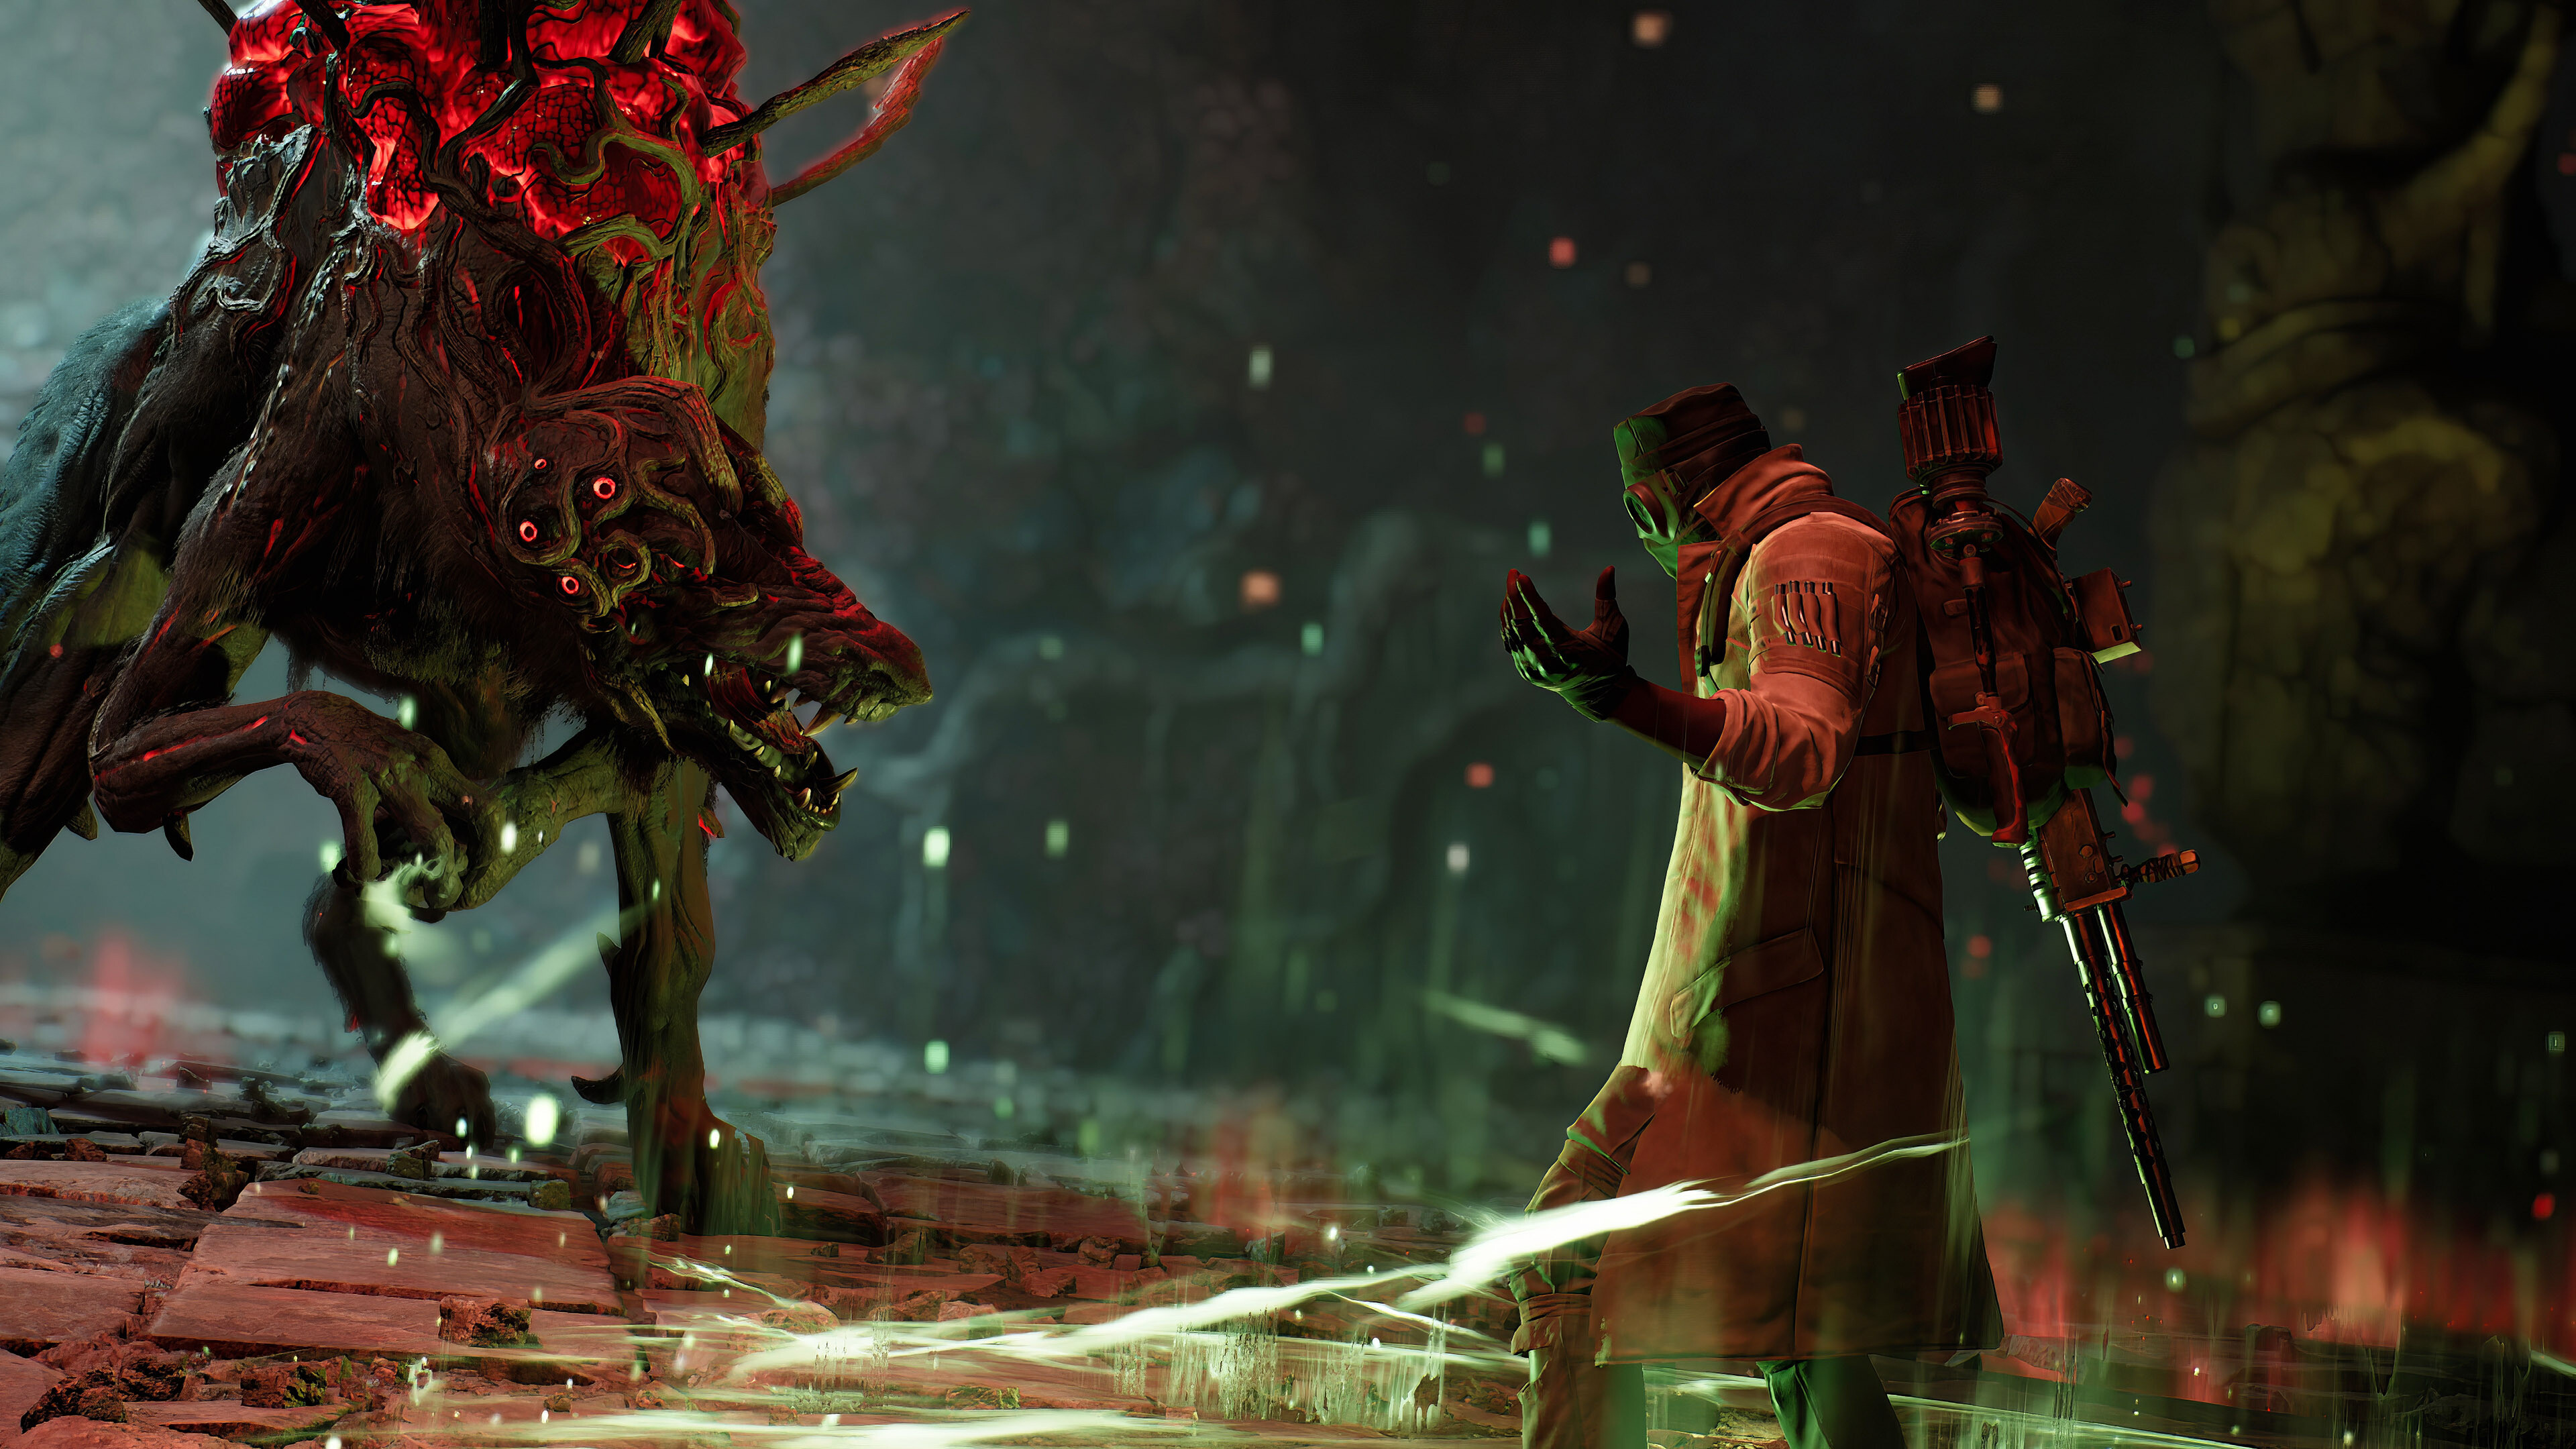 Baş tasarımcı, Remnant 2'nin en hardcore oyuncuların bile henüz bulamadığı 'sırlar içinde sırlar içinde sırlara' sahip olduğunu söylüyor.